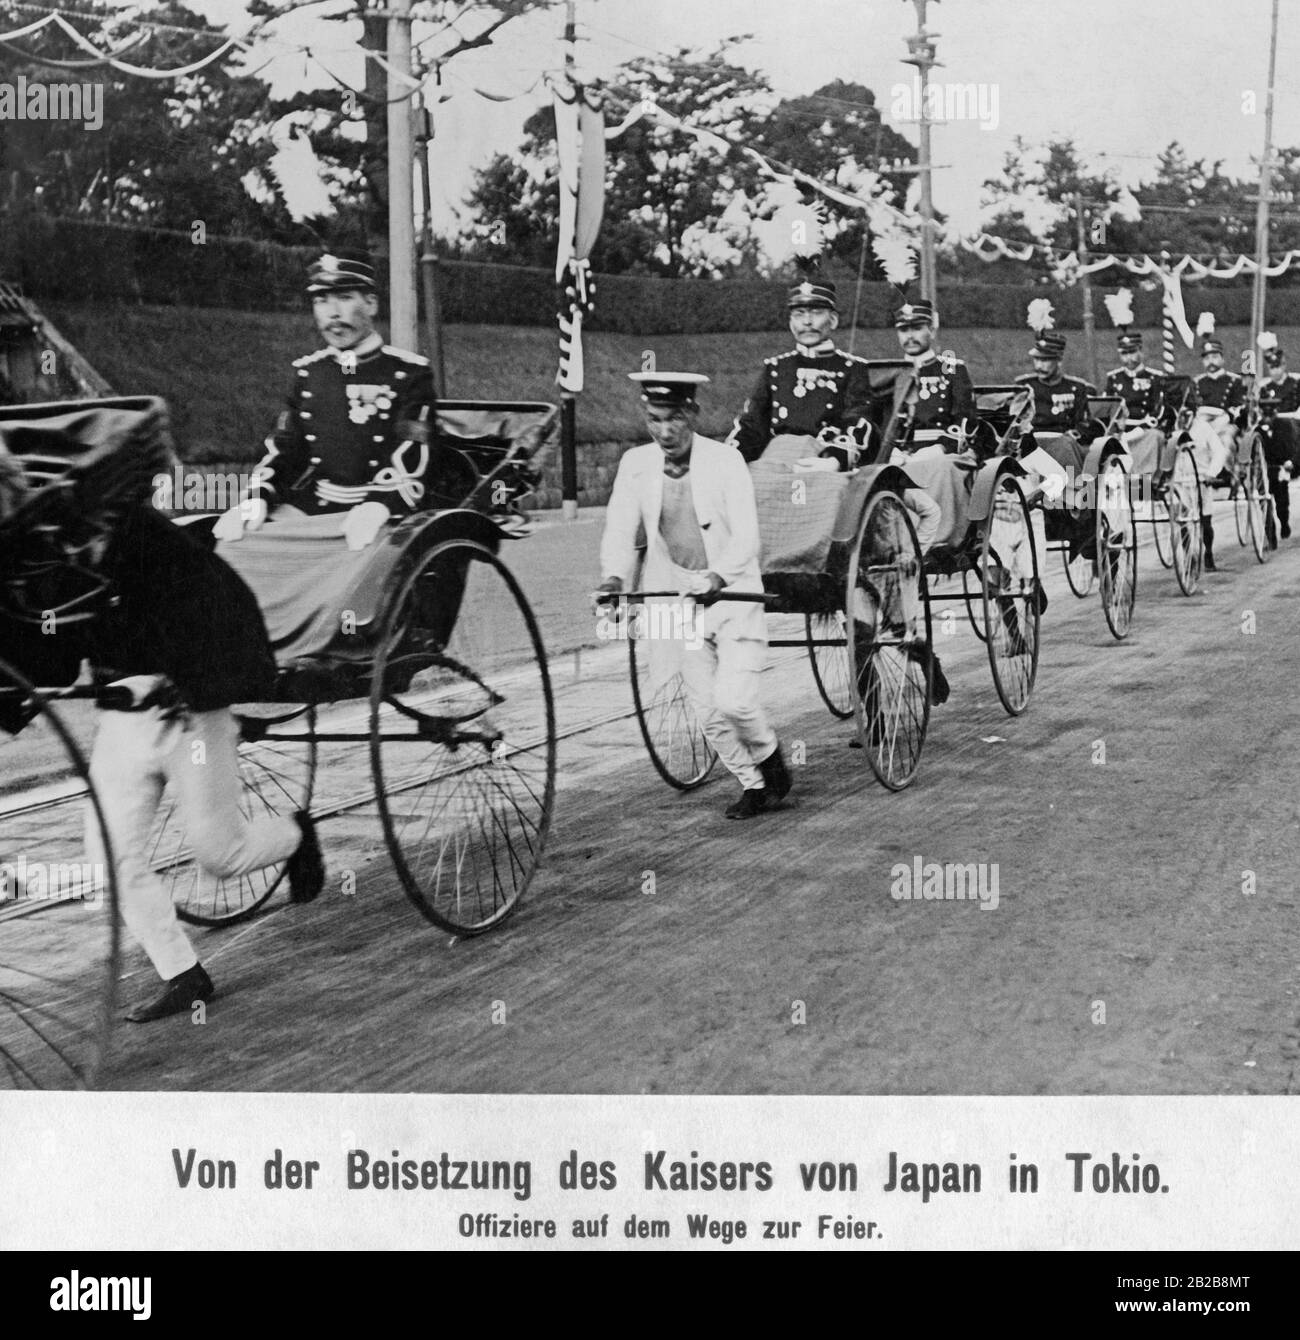 Certains officiers de l'armée impériale japonaise sont conduits avec des rickshaws aux funérailles de l'empereur japonais à Tokyo. Banque D'Images